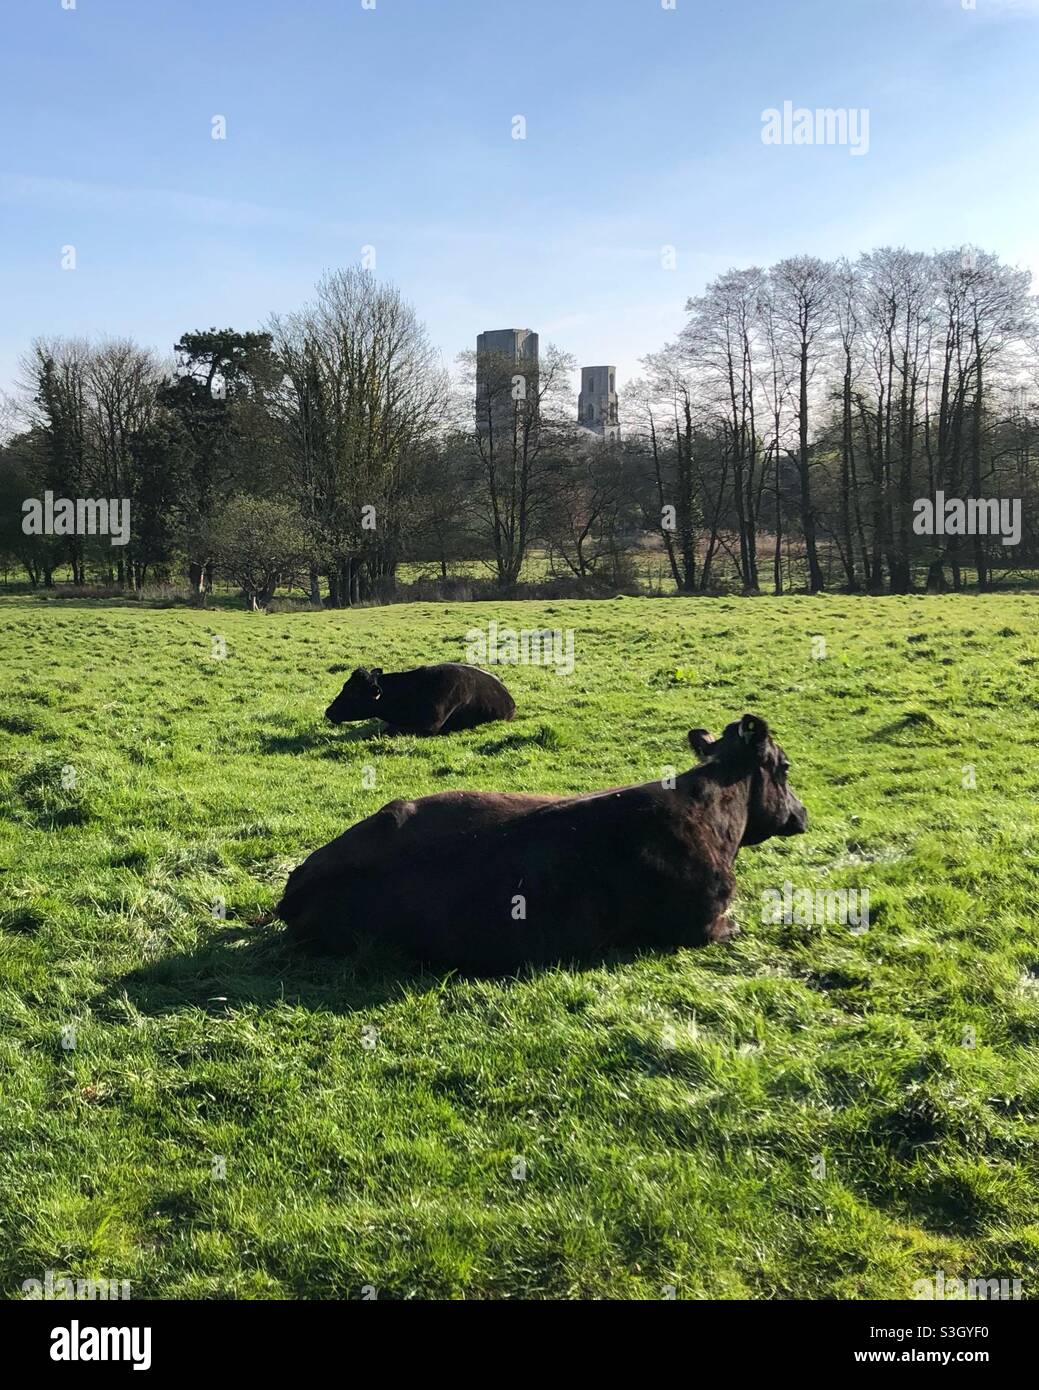 Deux vaches marron foncé sont situées sur l'herbe verte avec l'abbaye de Wymondham en arrière-plan Banque D'Images